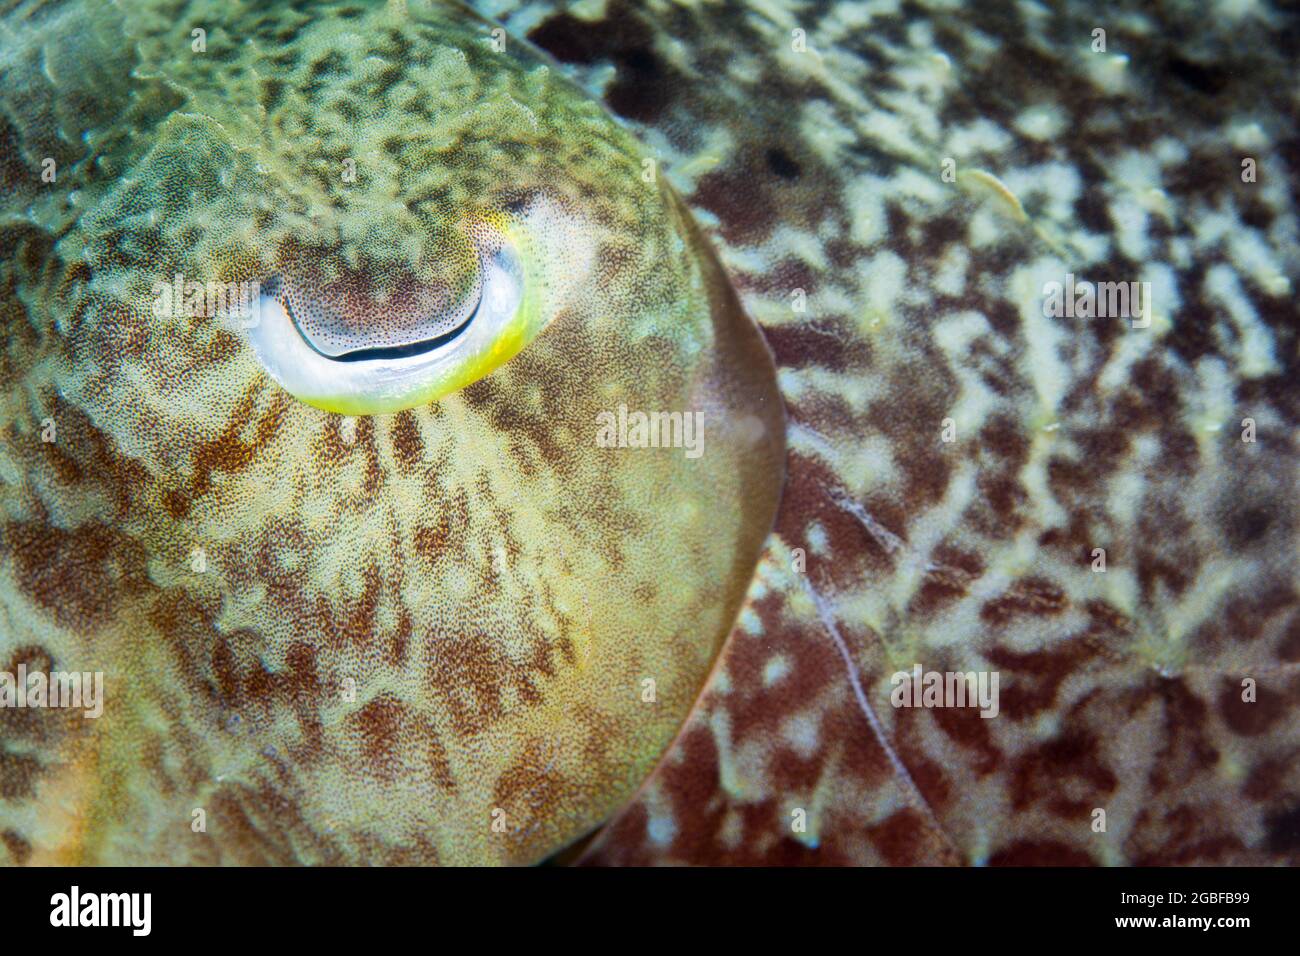 Detail des Auges und der Epidermis eines Broadclub-Tintenfischs, Sepia latimanus, in der Lembeh-Straße, Indonesien. Diese Ccepalopoden sind Meister der Tarnung. Stockfoto